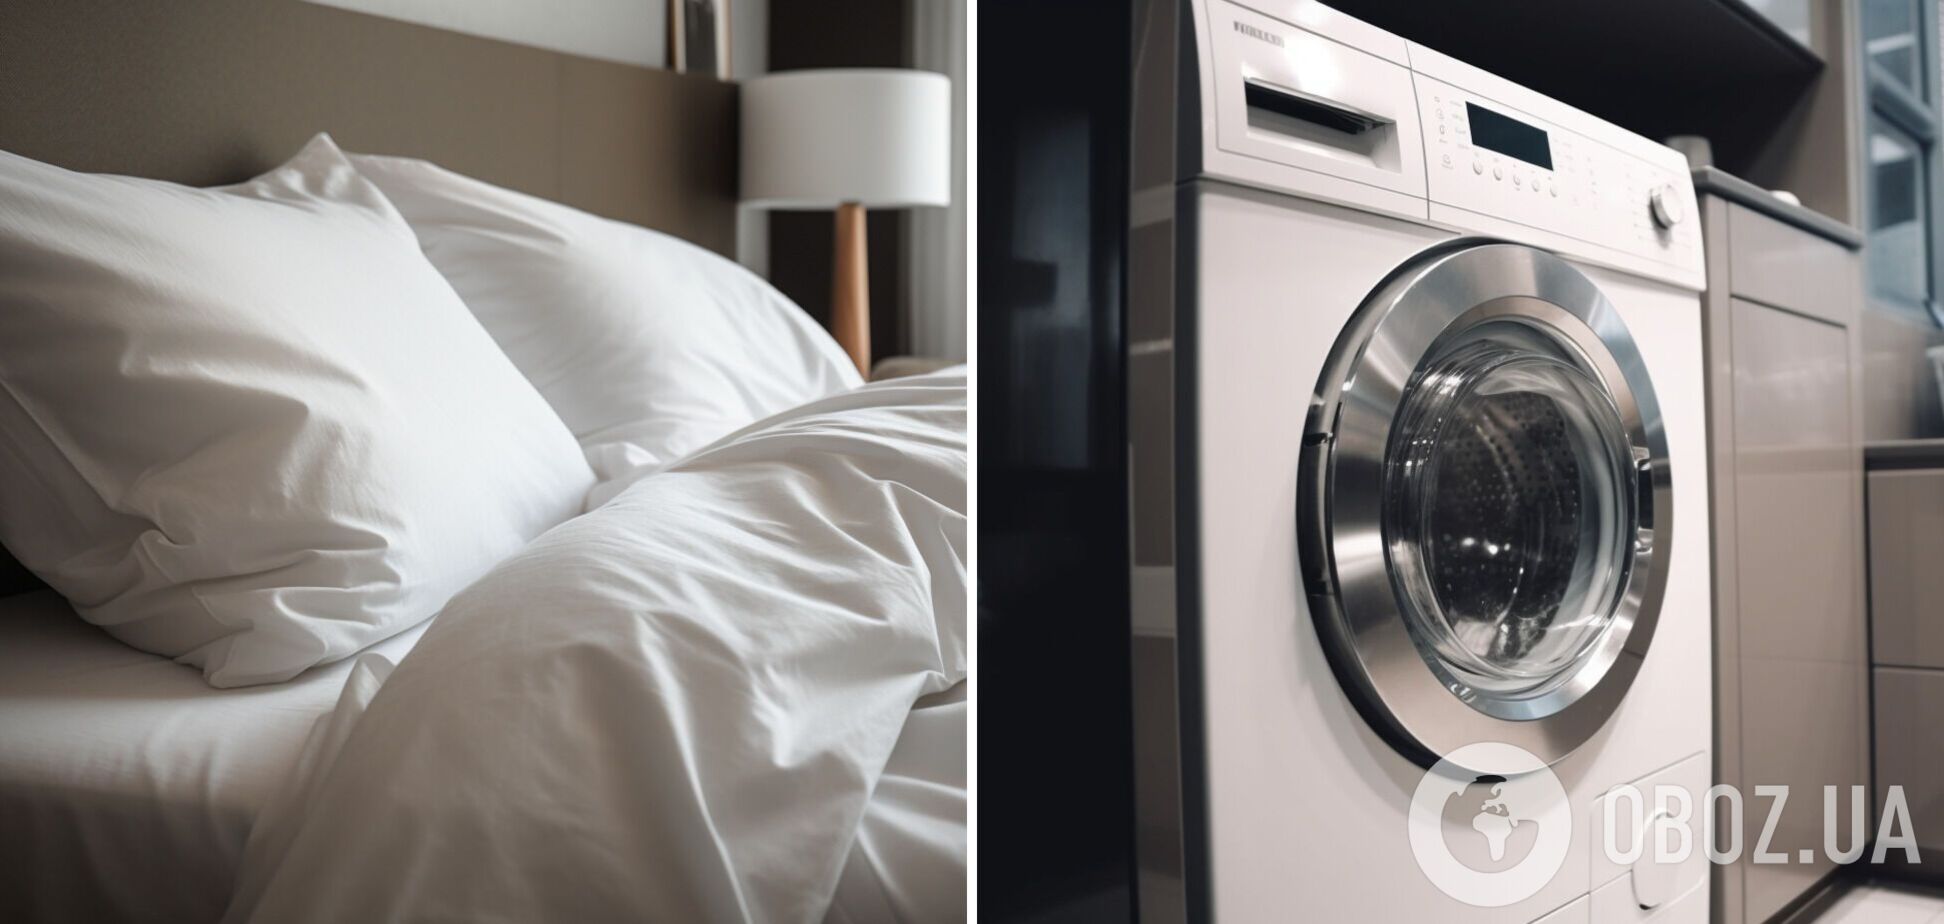 Как правильно стирать постельное белье: будет идеально чистым и ароматным